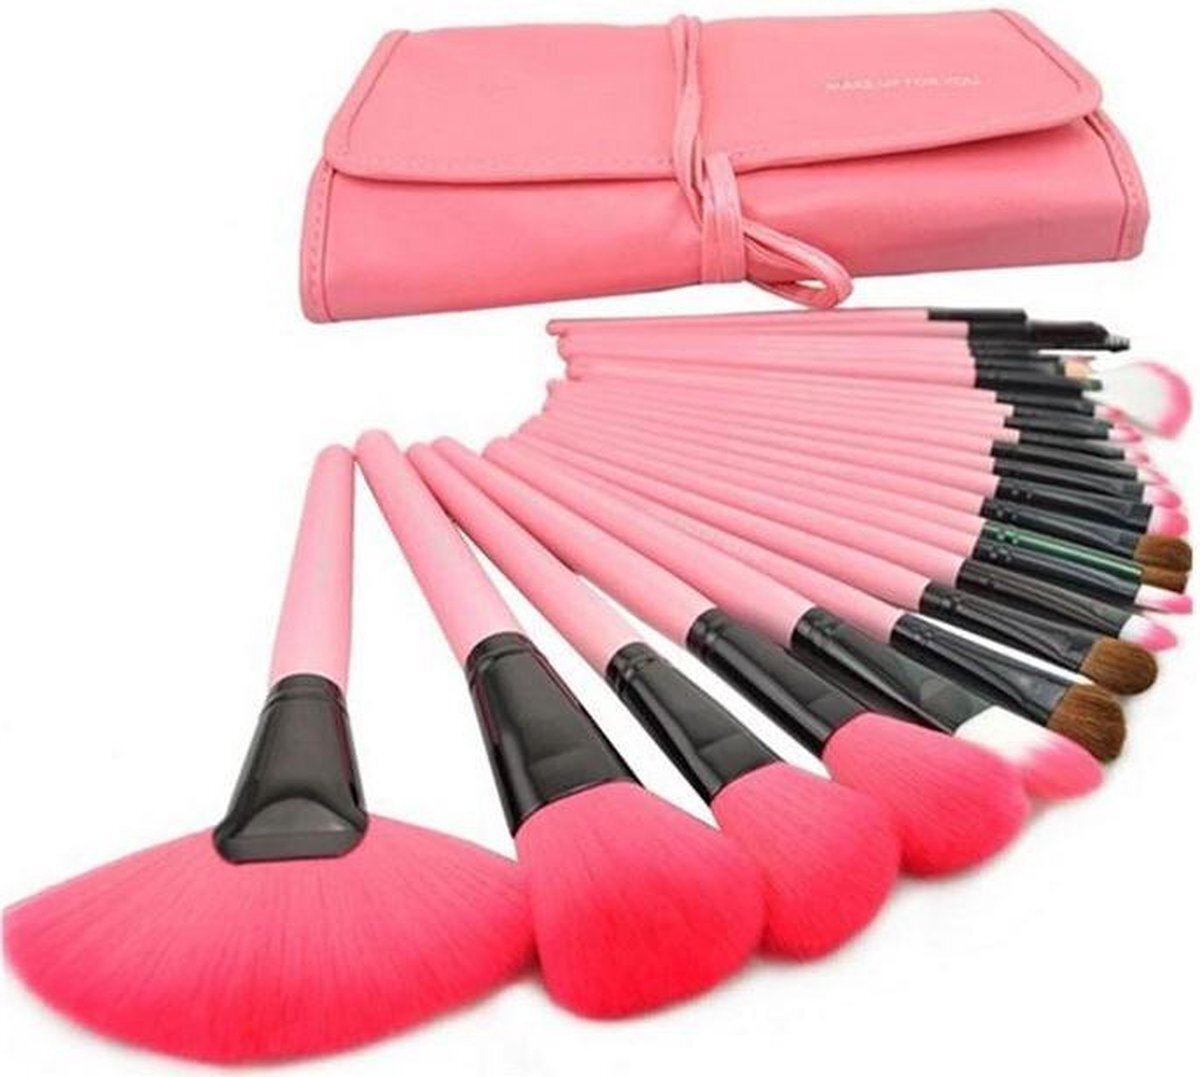 pippashop 24-delige make-up kwasten set in lederlook etui roze